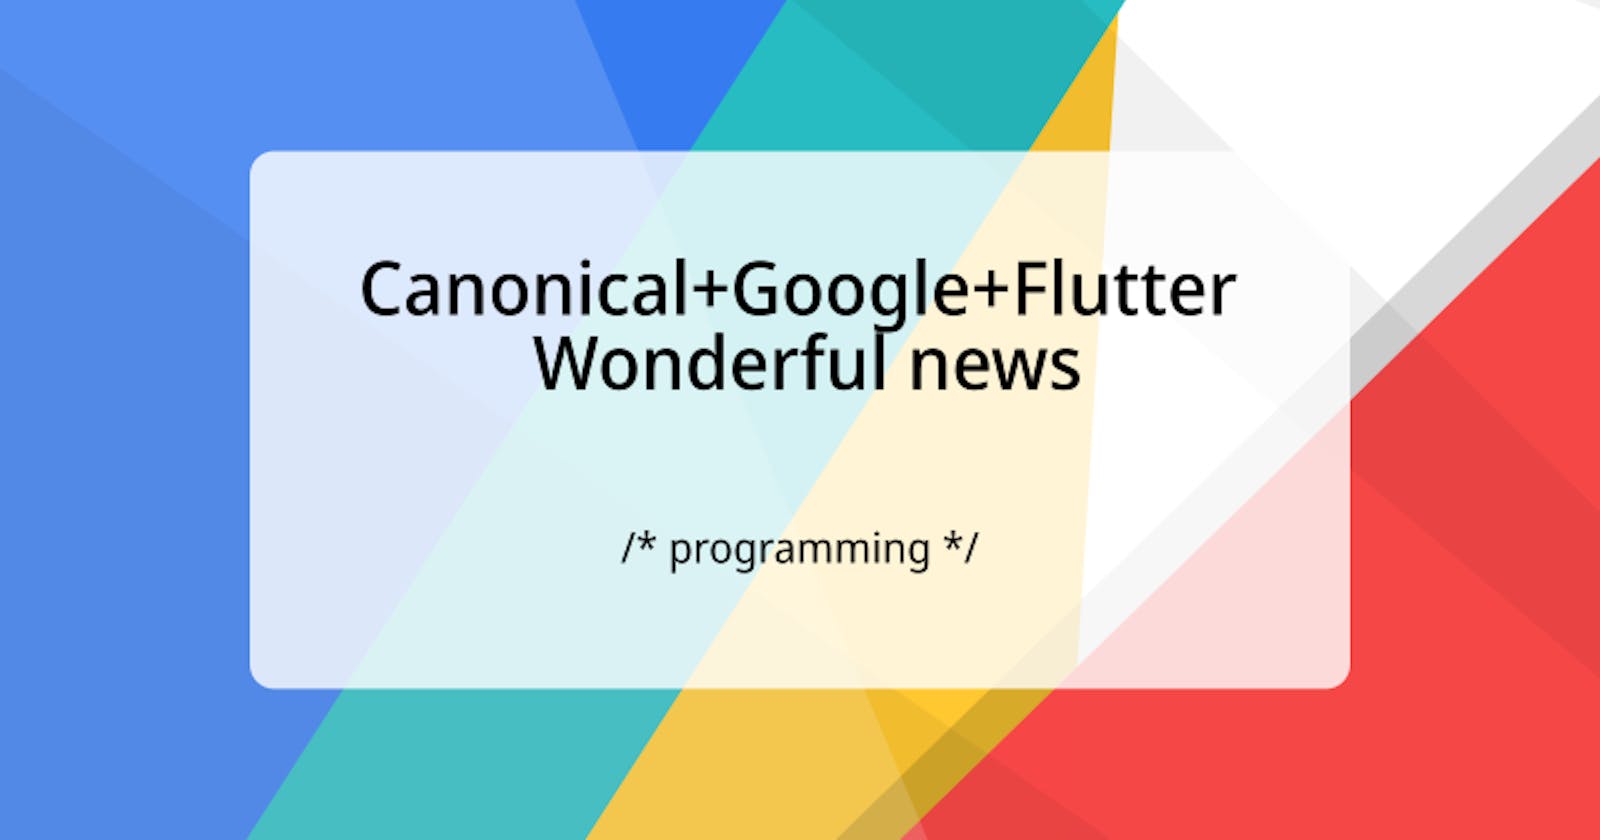 Canonical+Google+Flutter = Wonderful news 💙